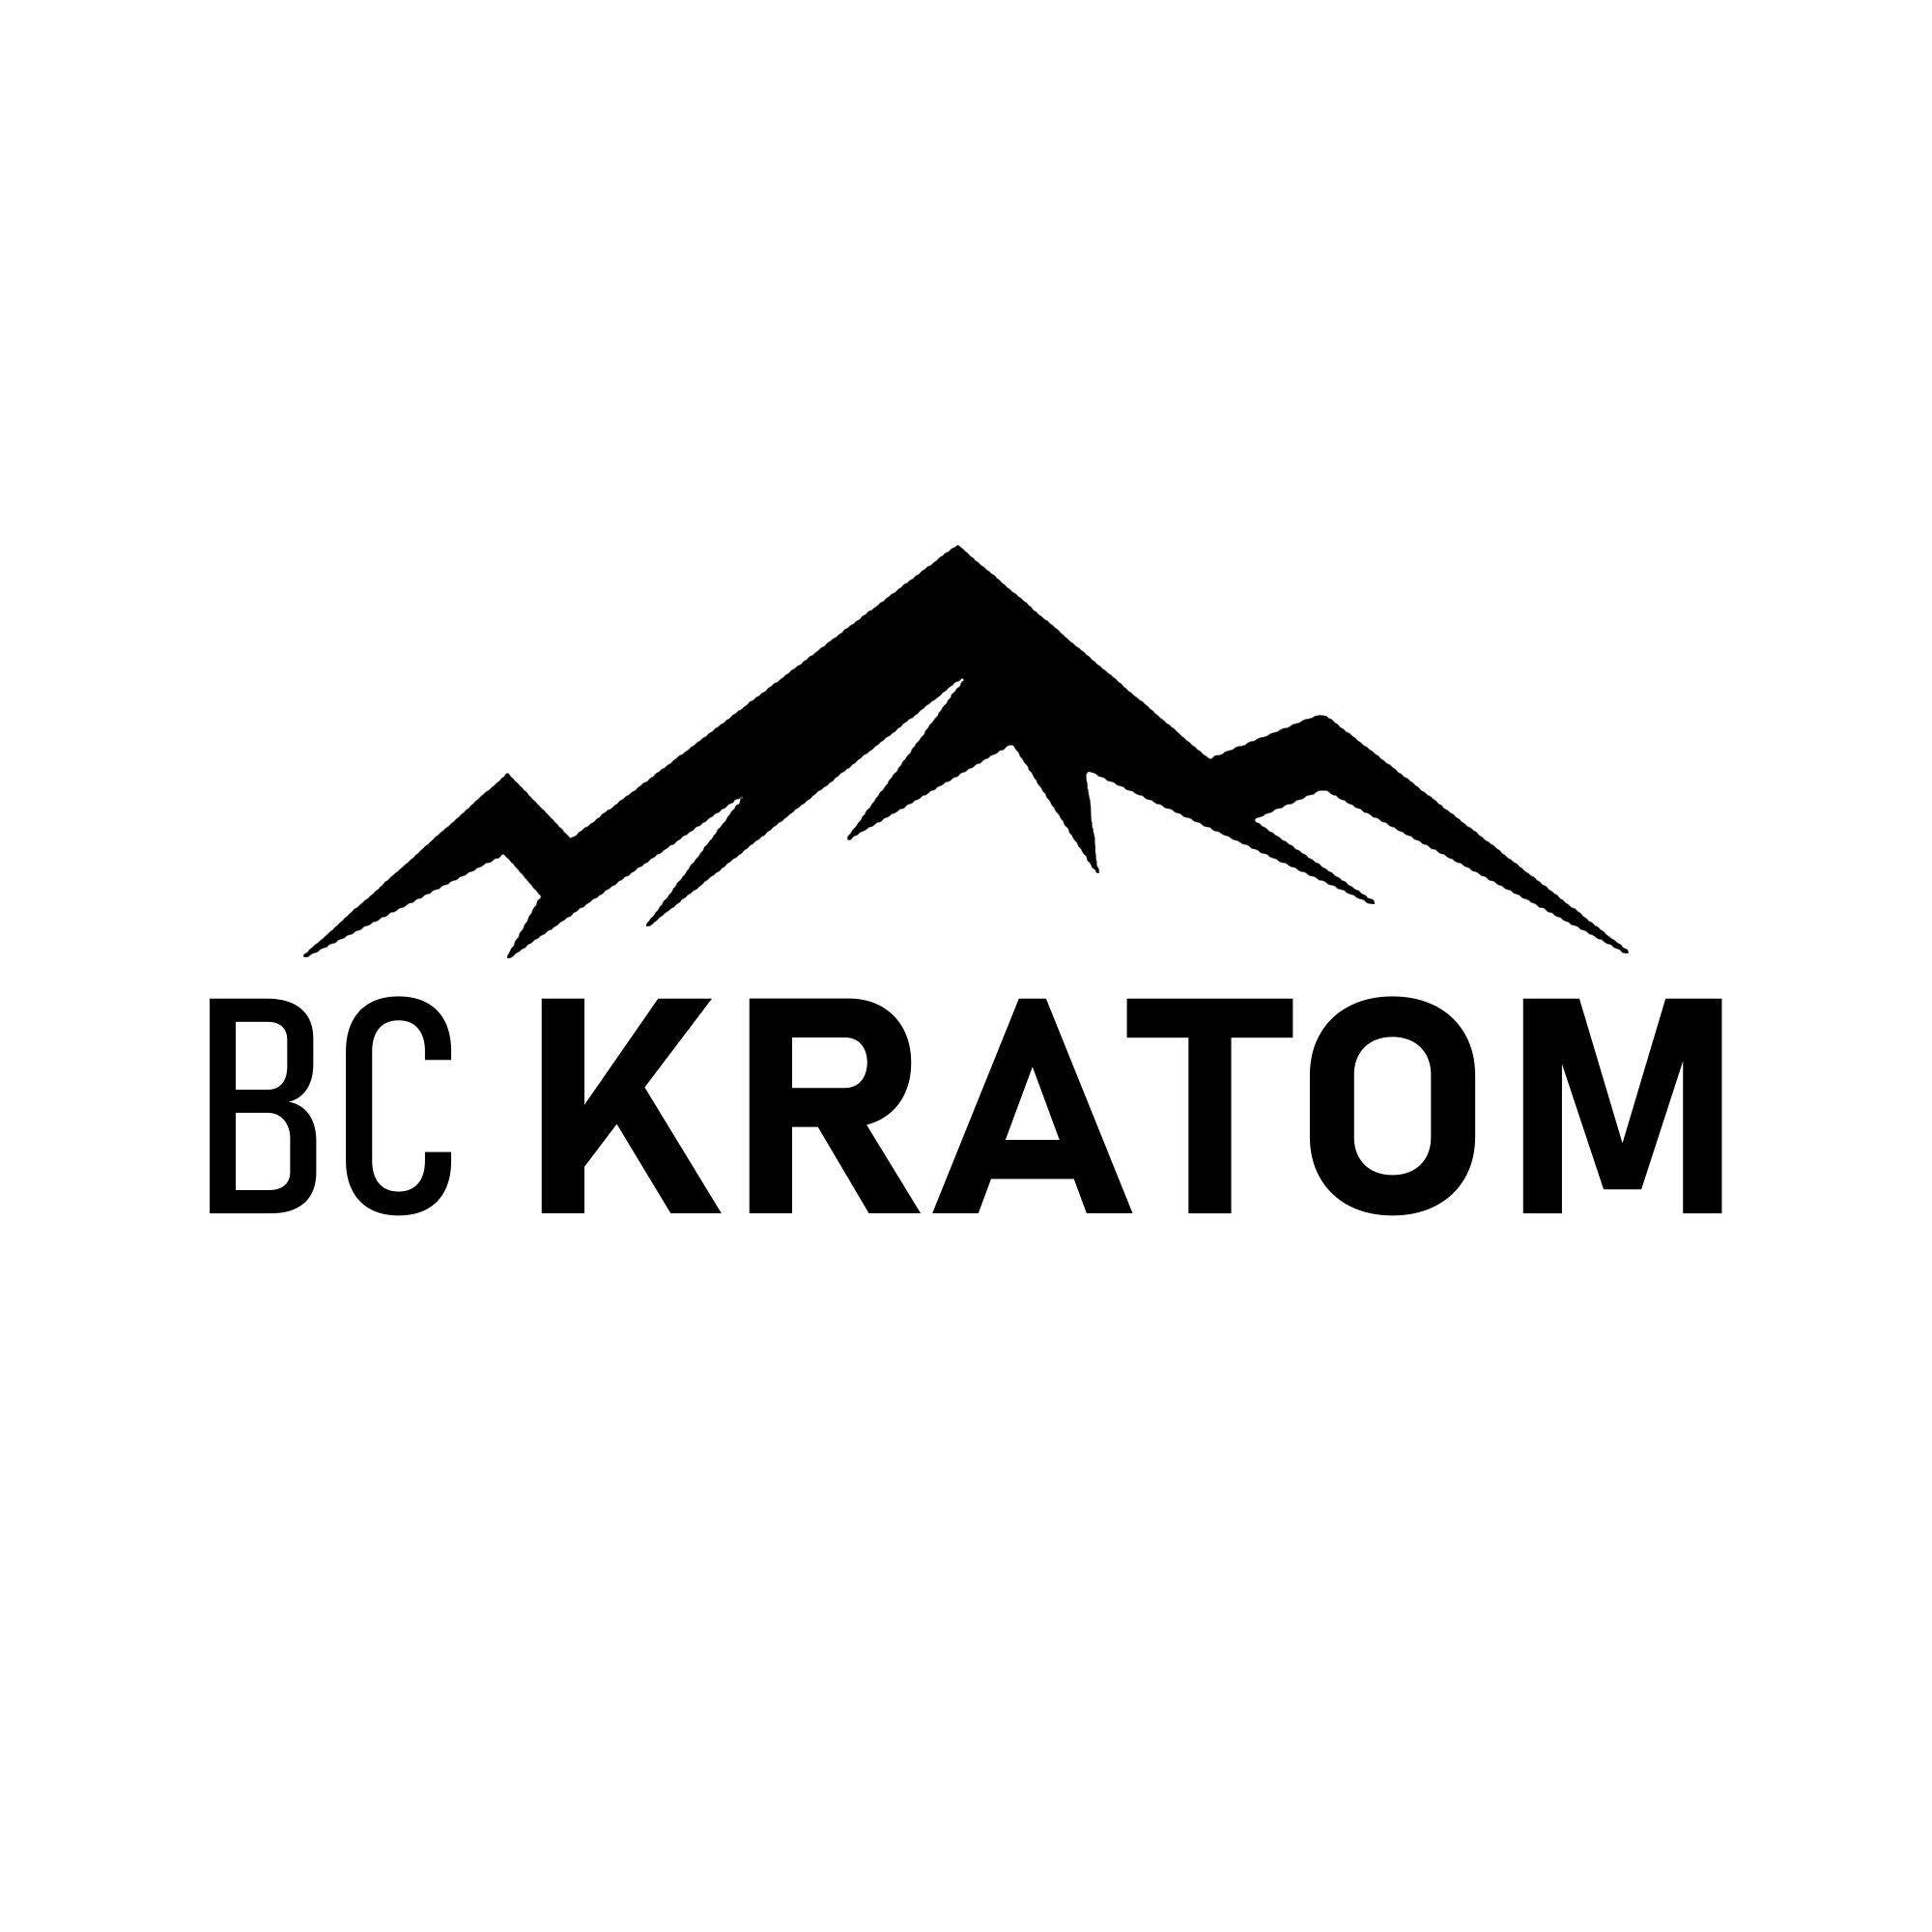 BC Kratom